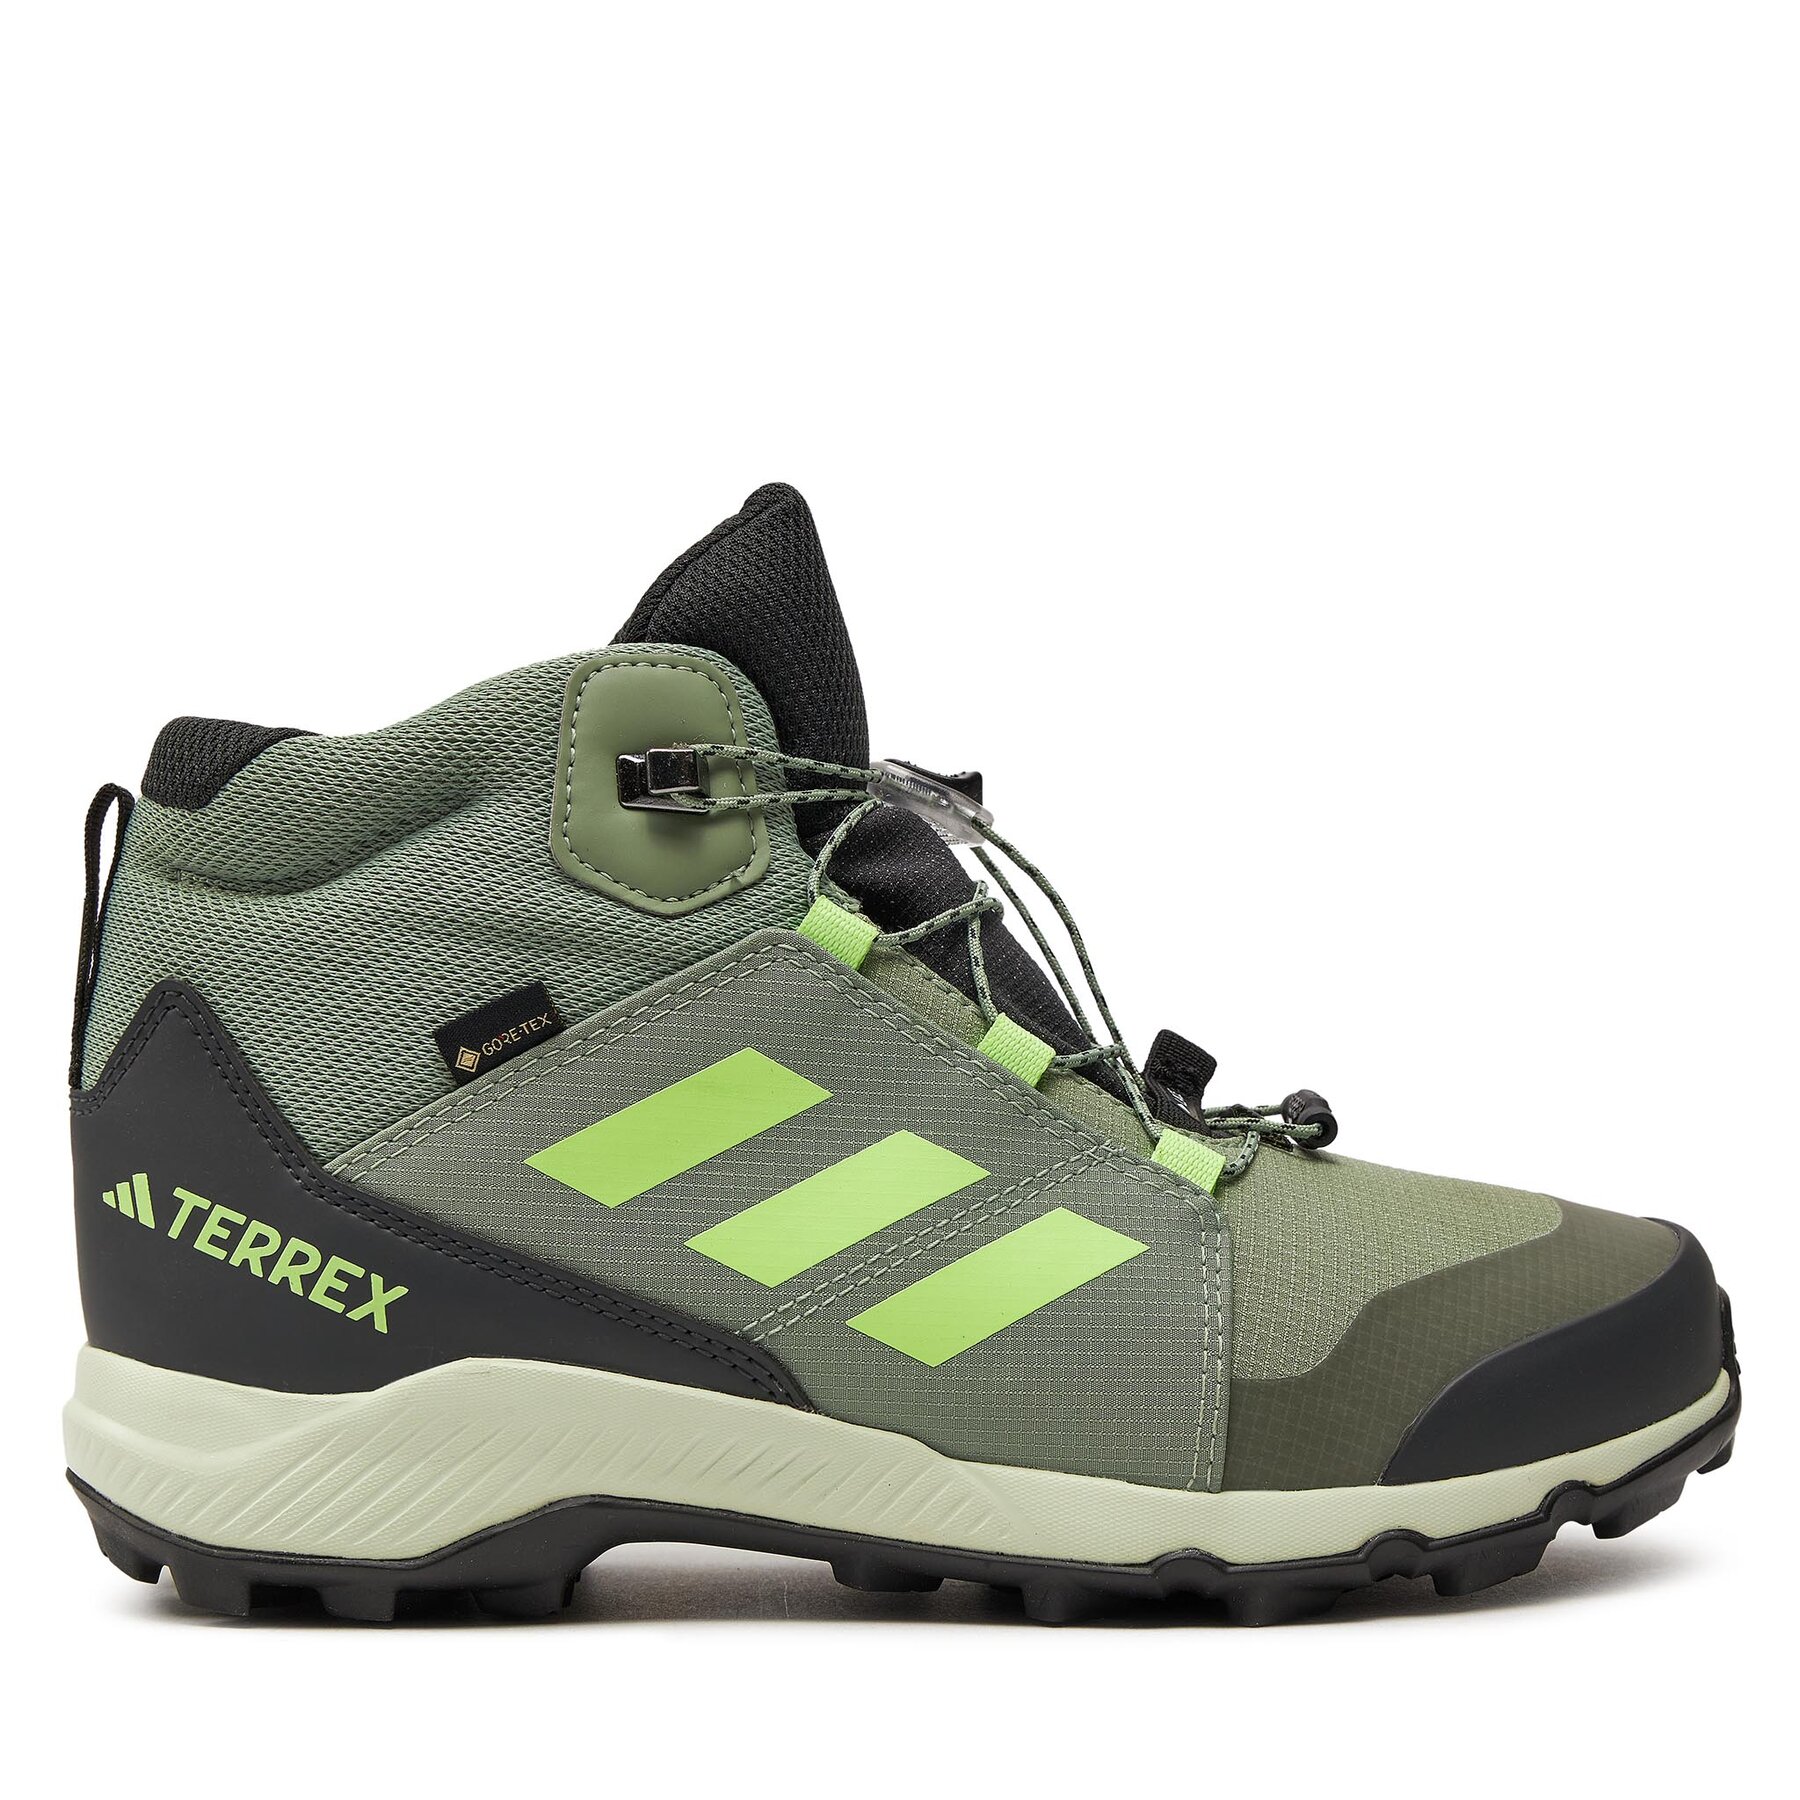 Trekkingschuhe adidas Terrex Mid GORE-TEX Hiking IE7619 Grün von Adidas